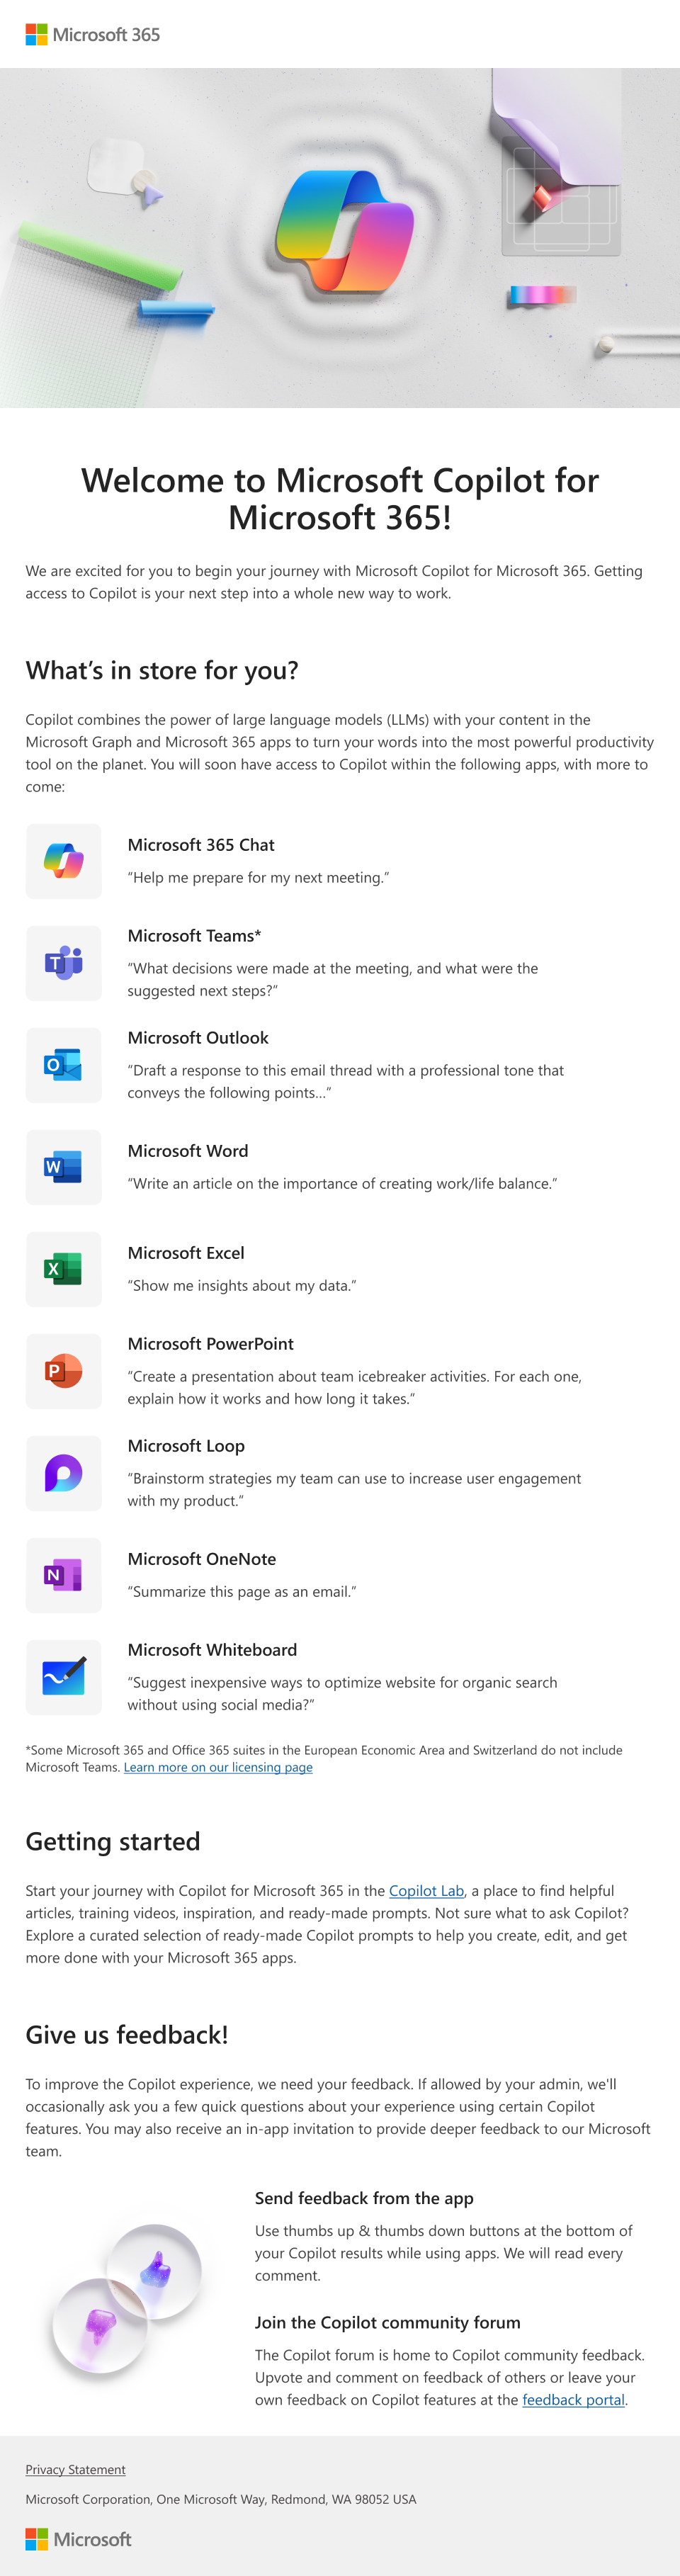 Kuva sähköpostista, jossa esitellään Microsoft Copilot Microsoft 365:lle ja sen ominaisuudet, jotka järjestelmänvalvoja voi tarjota käyttäjille.